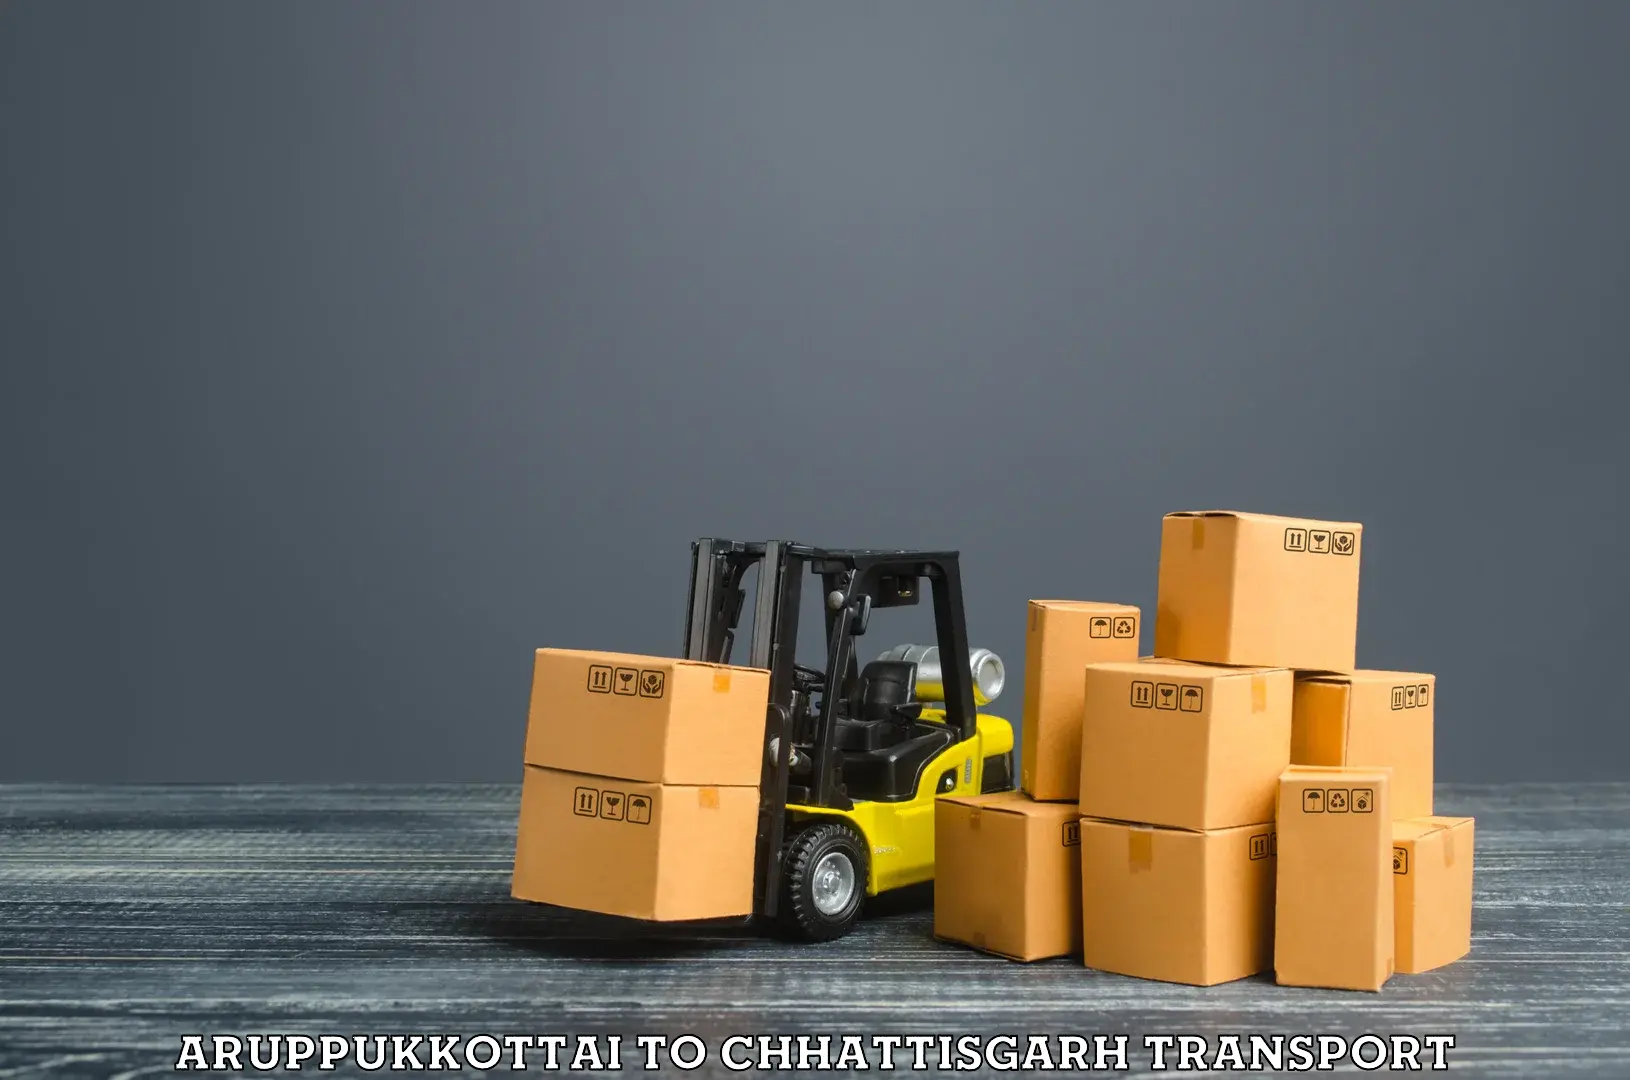 Package delivery services Aruppukkottai to Bijapur Chhattisgarh